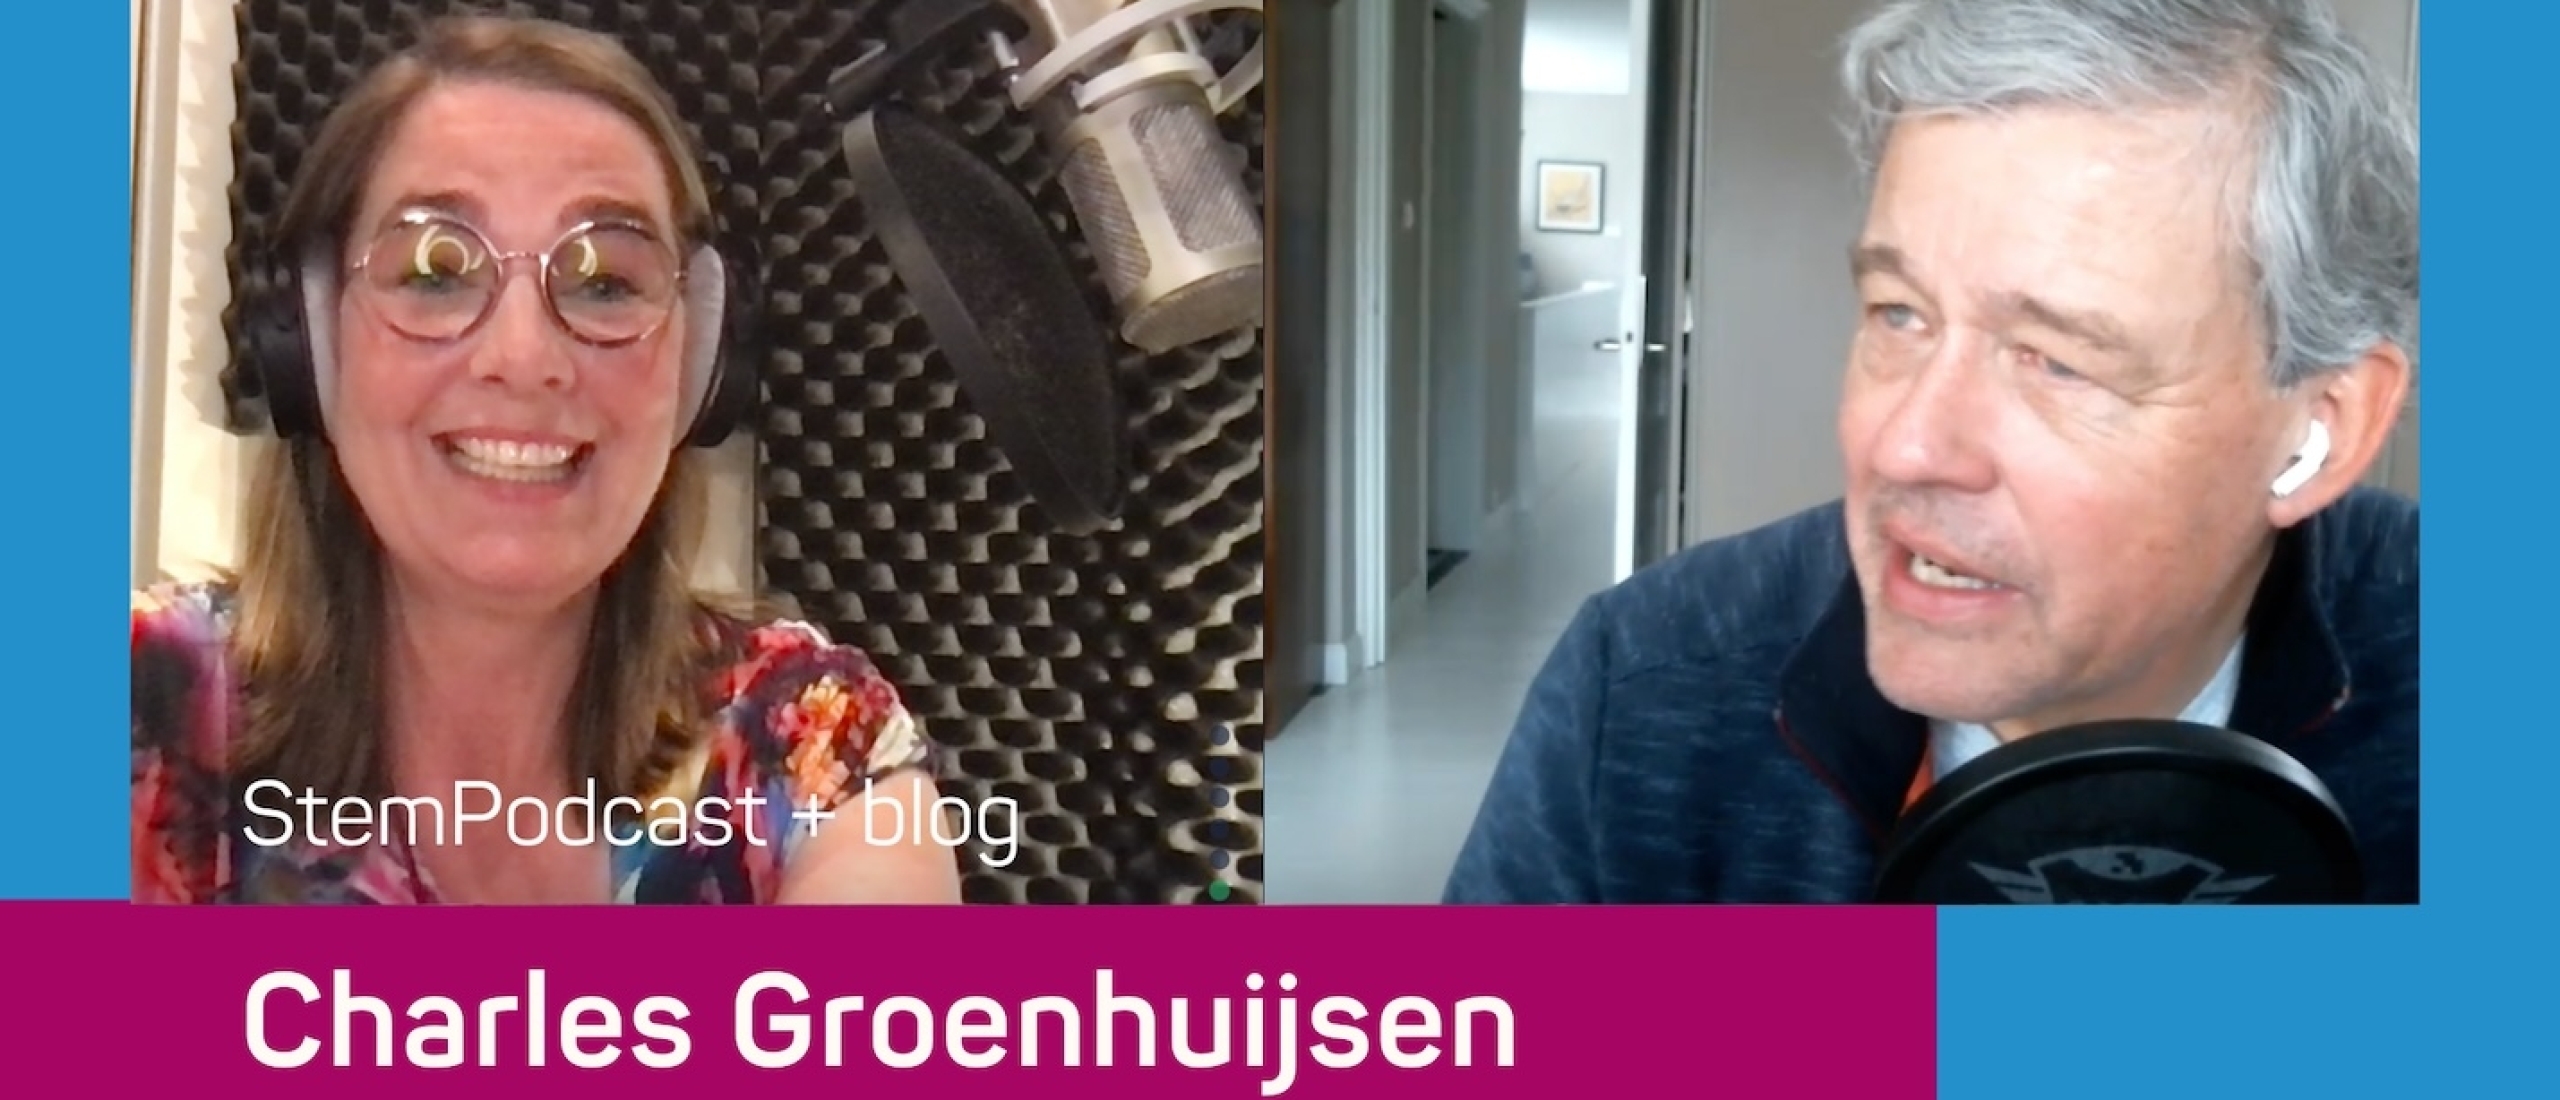 Tv-presentator Charles Groenhuijsen in de StemPodcast: ‘Pauzes zijn zwaar onderschatte retorische middelen’